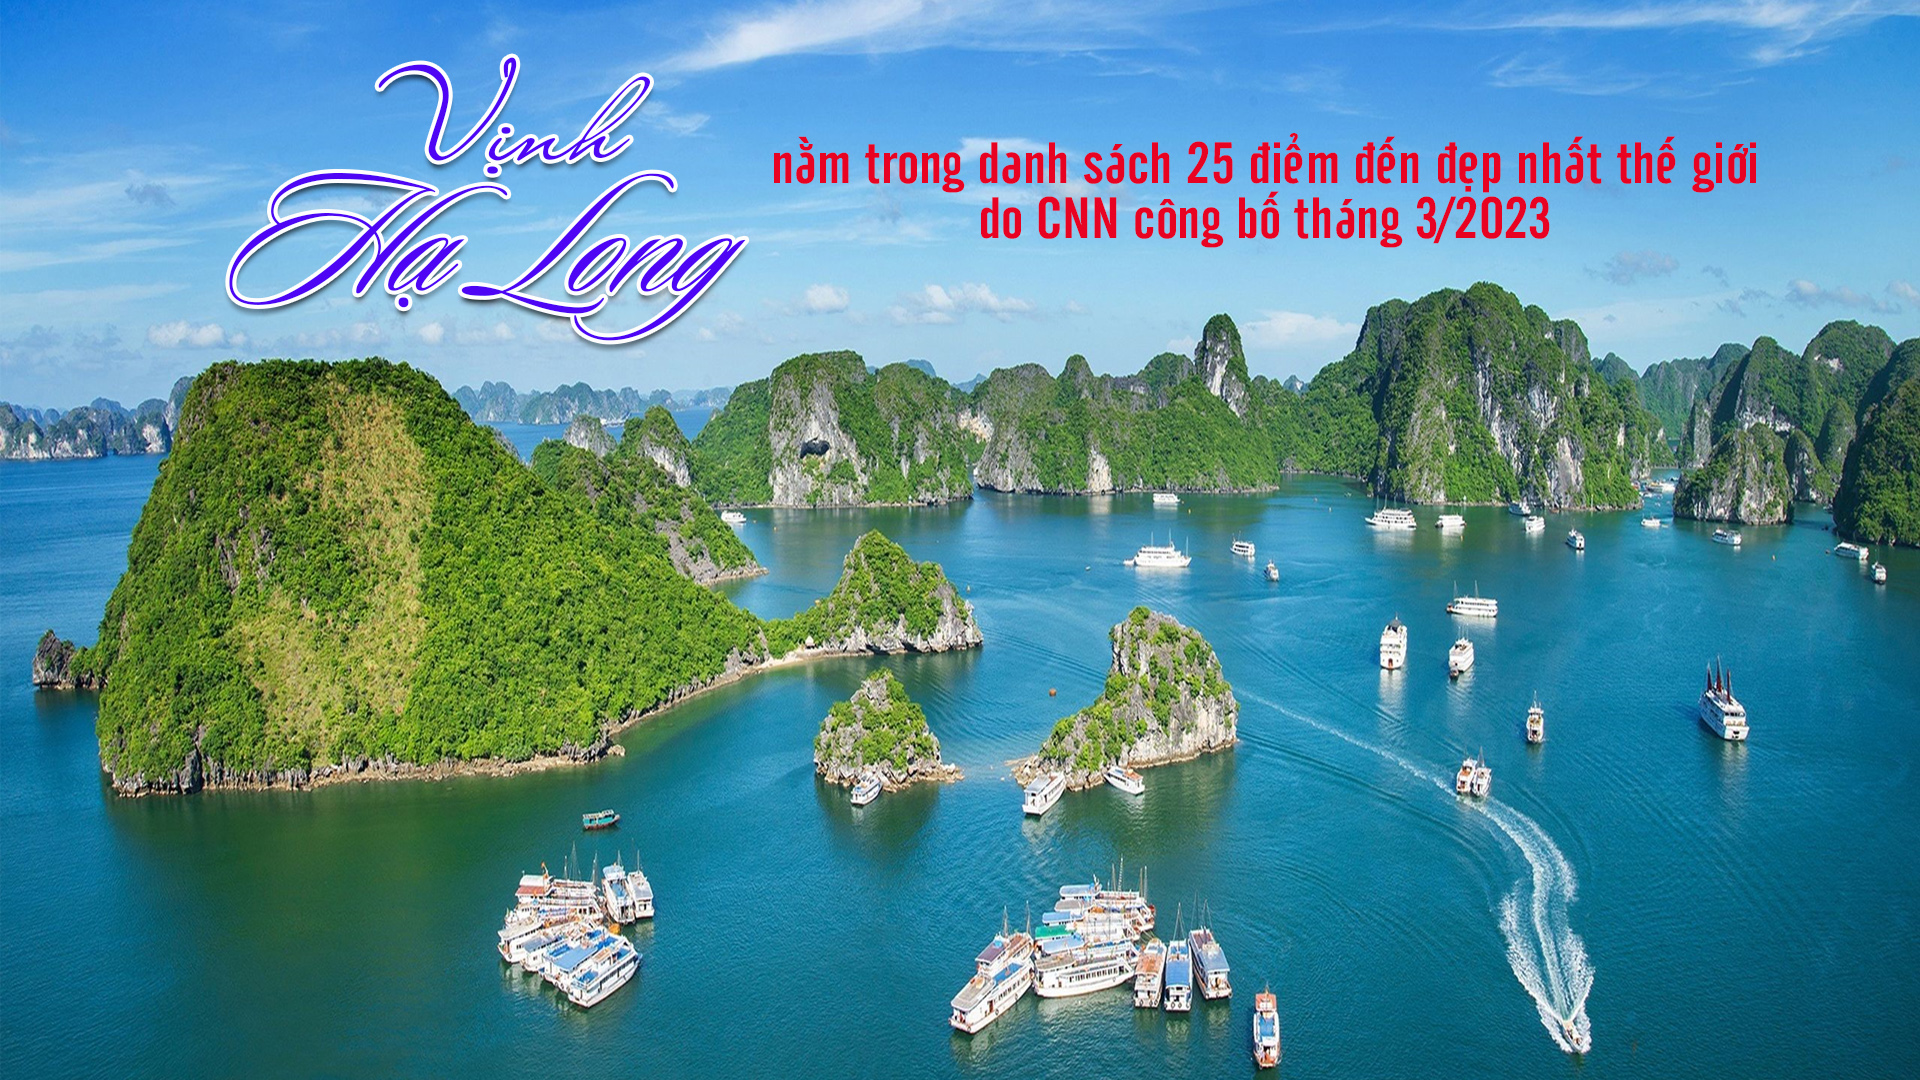 Vịnh Hạ Long nằm trong danh sách 25 điểm đến đẹp nhất thế giới do CNN công bố tháng 3/2023